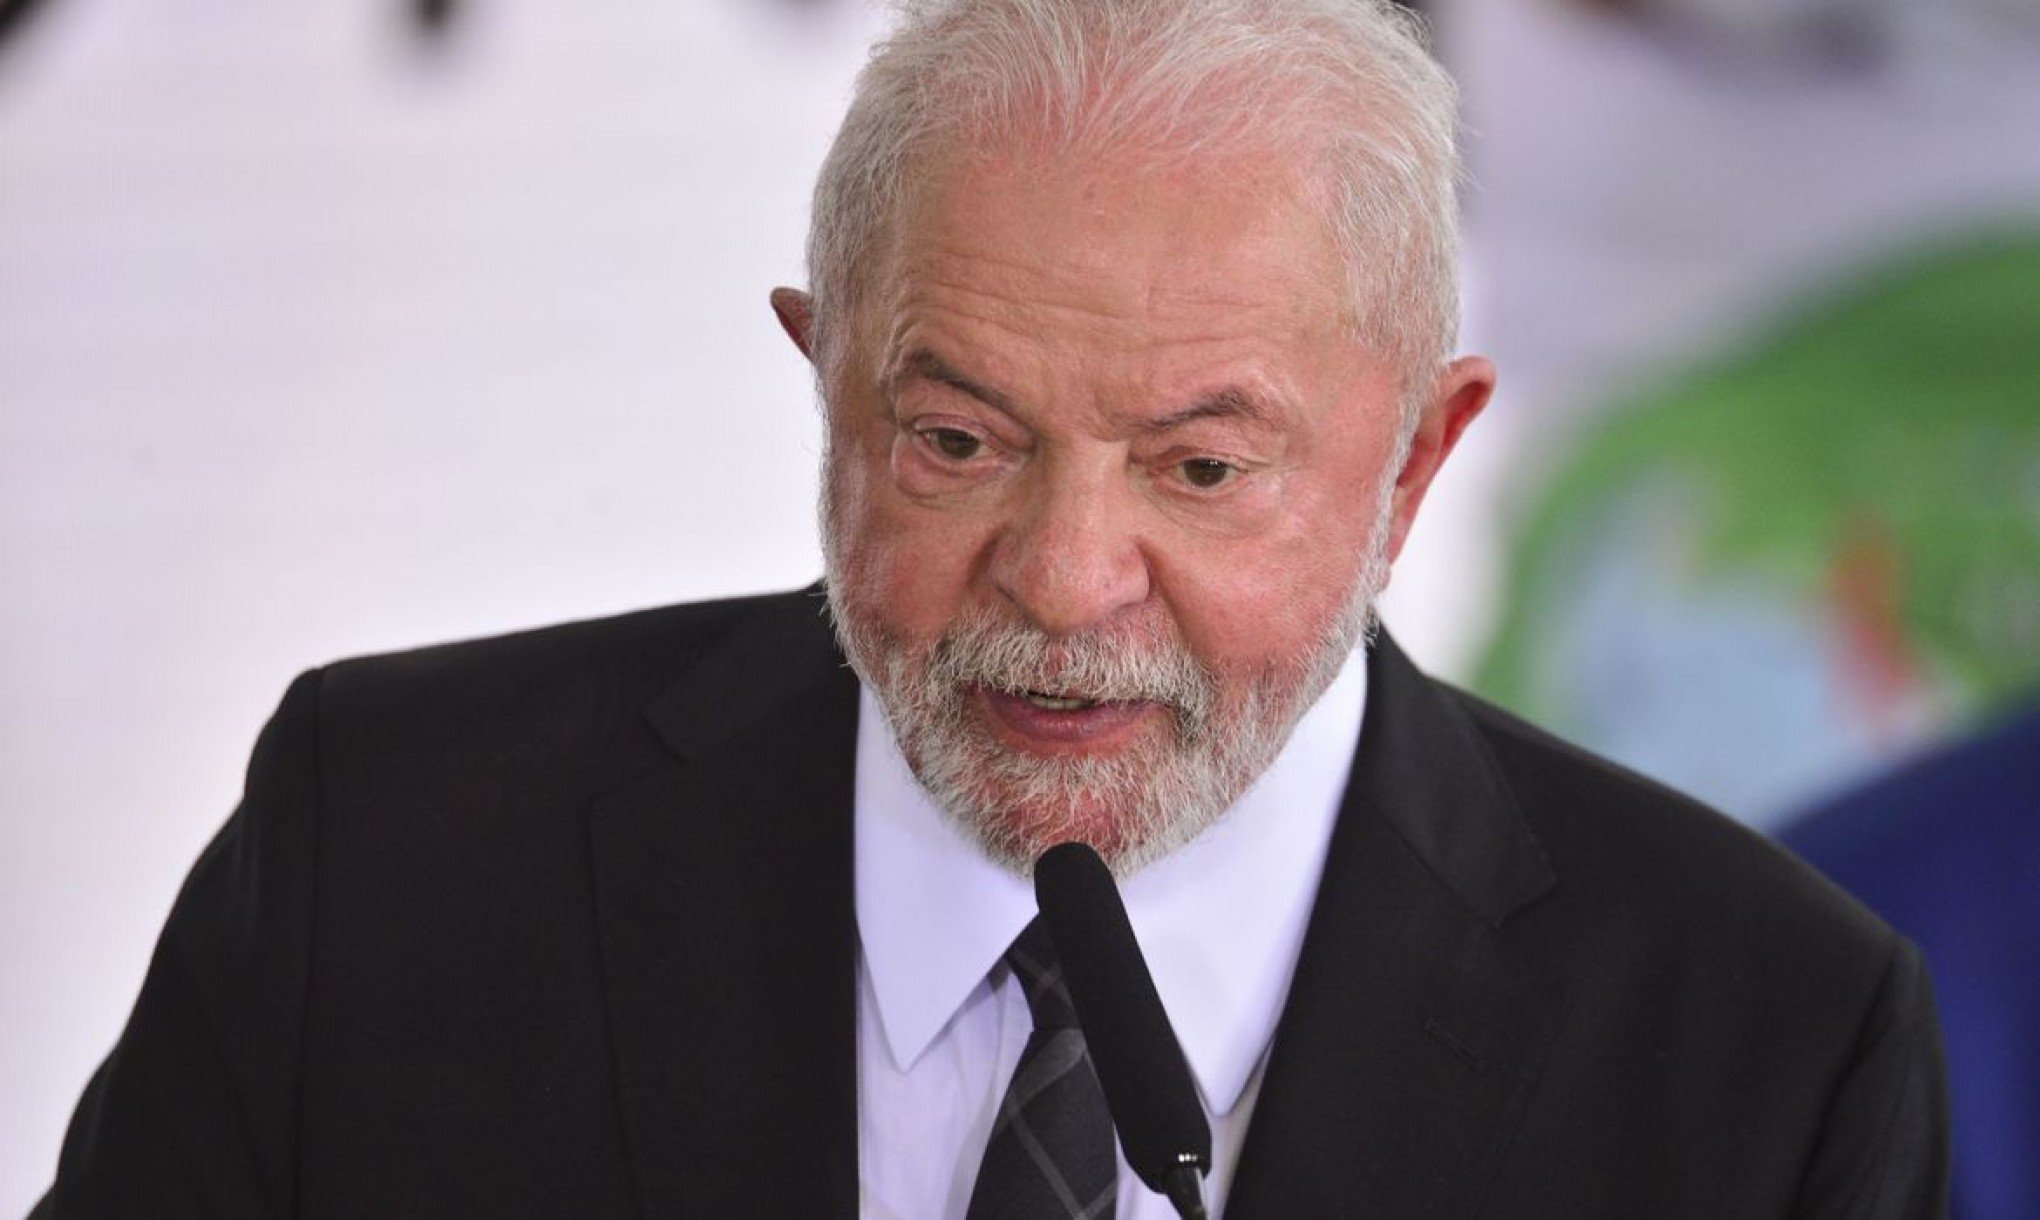 Lula classifica assassinato de crianças em SC como tragédia inaceitável e covardia